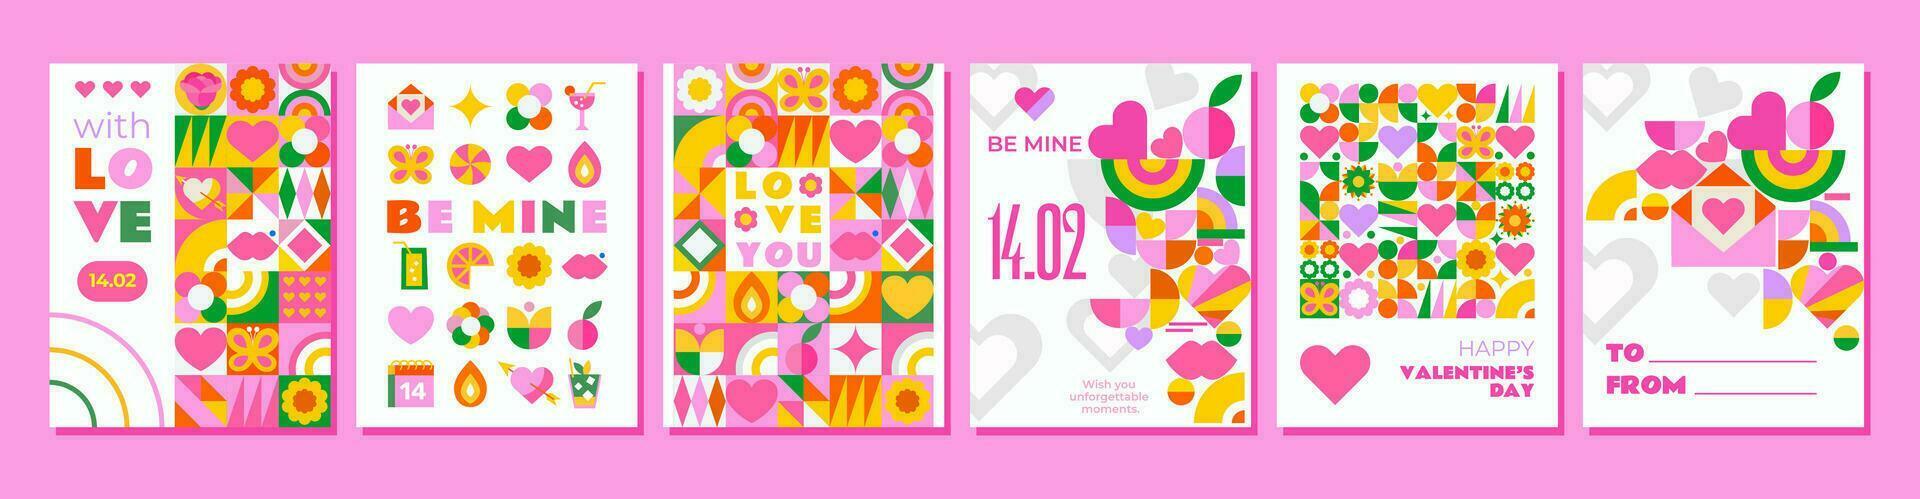 6 Rosa Vorlagen zu feiern Valentinstag Tag. Sie haben ein hell und süß Mosaik Design, perfekt zum Erstellen Grüße, Einladungen, Karten, Werbung und andere kreativ Projekte. vektor